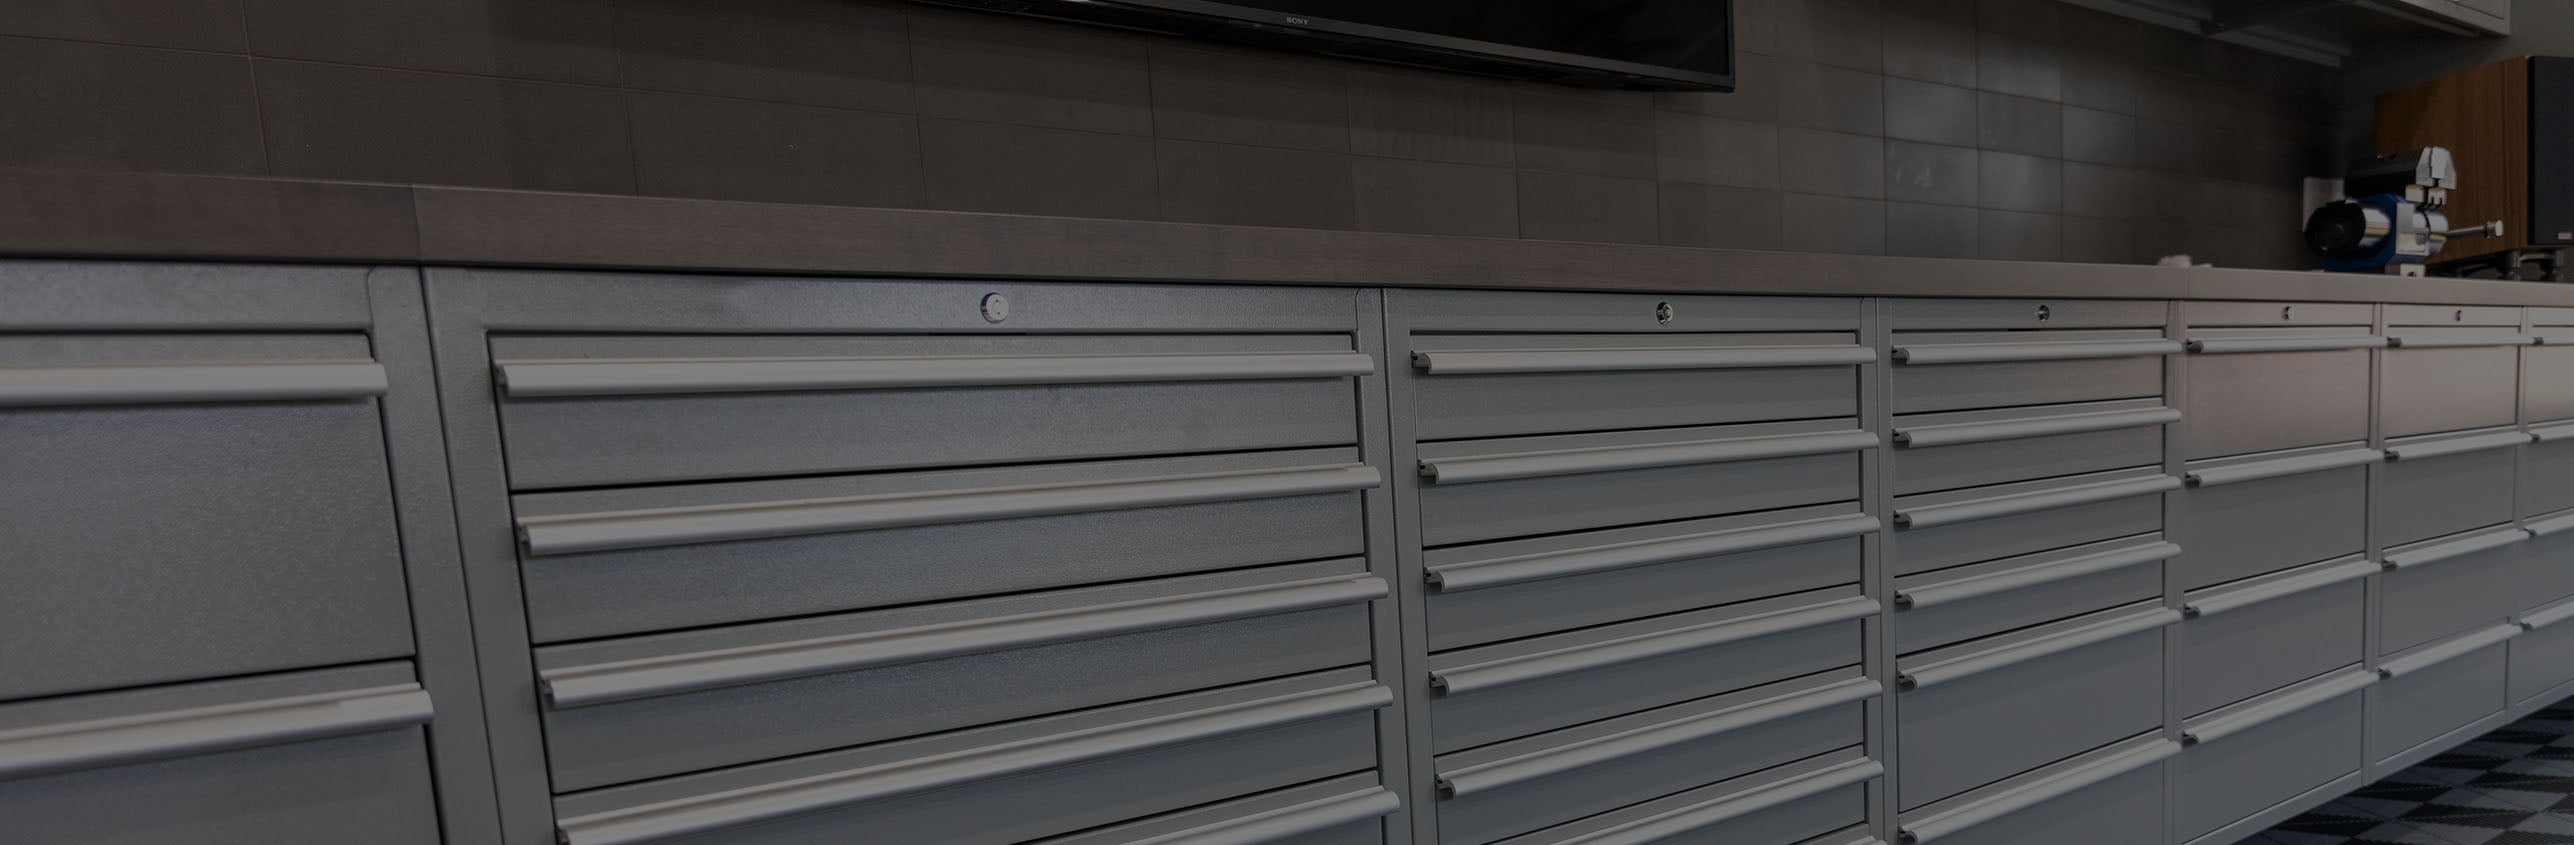 Saber Cabinets Garage Storage